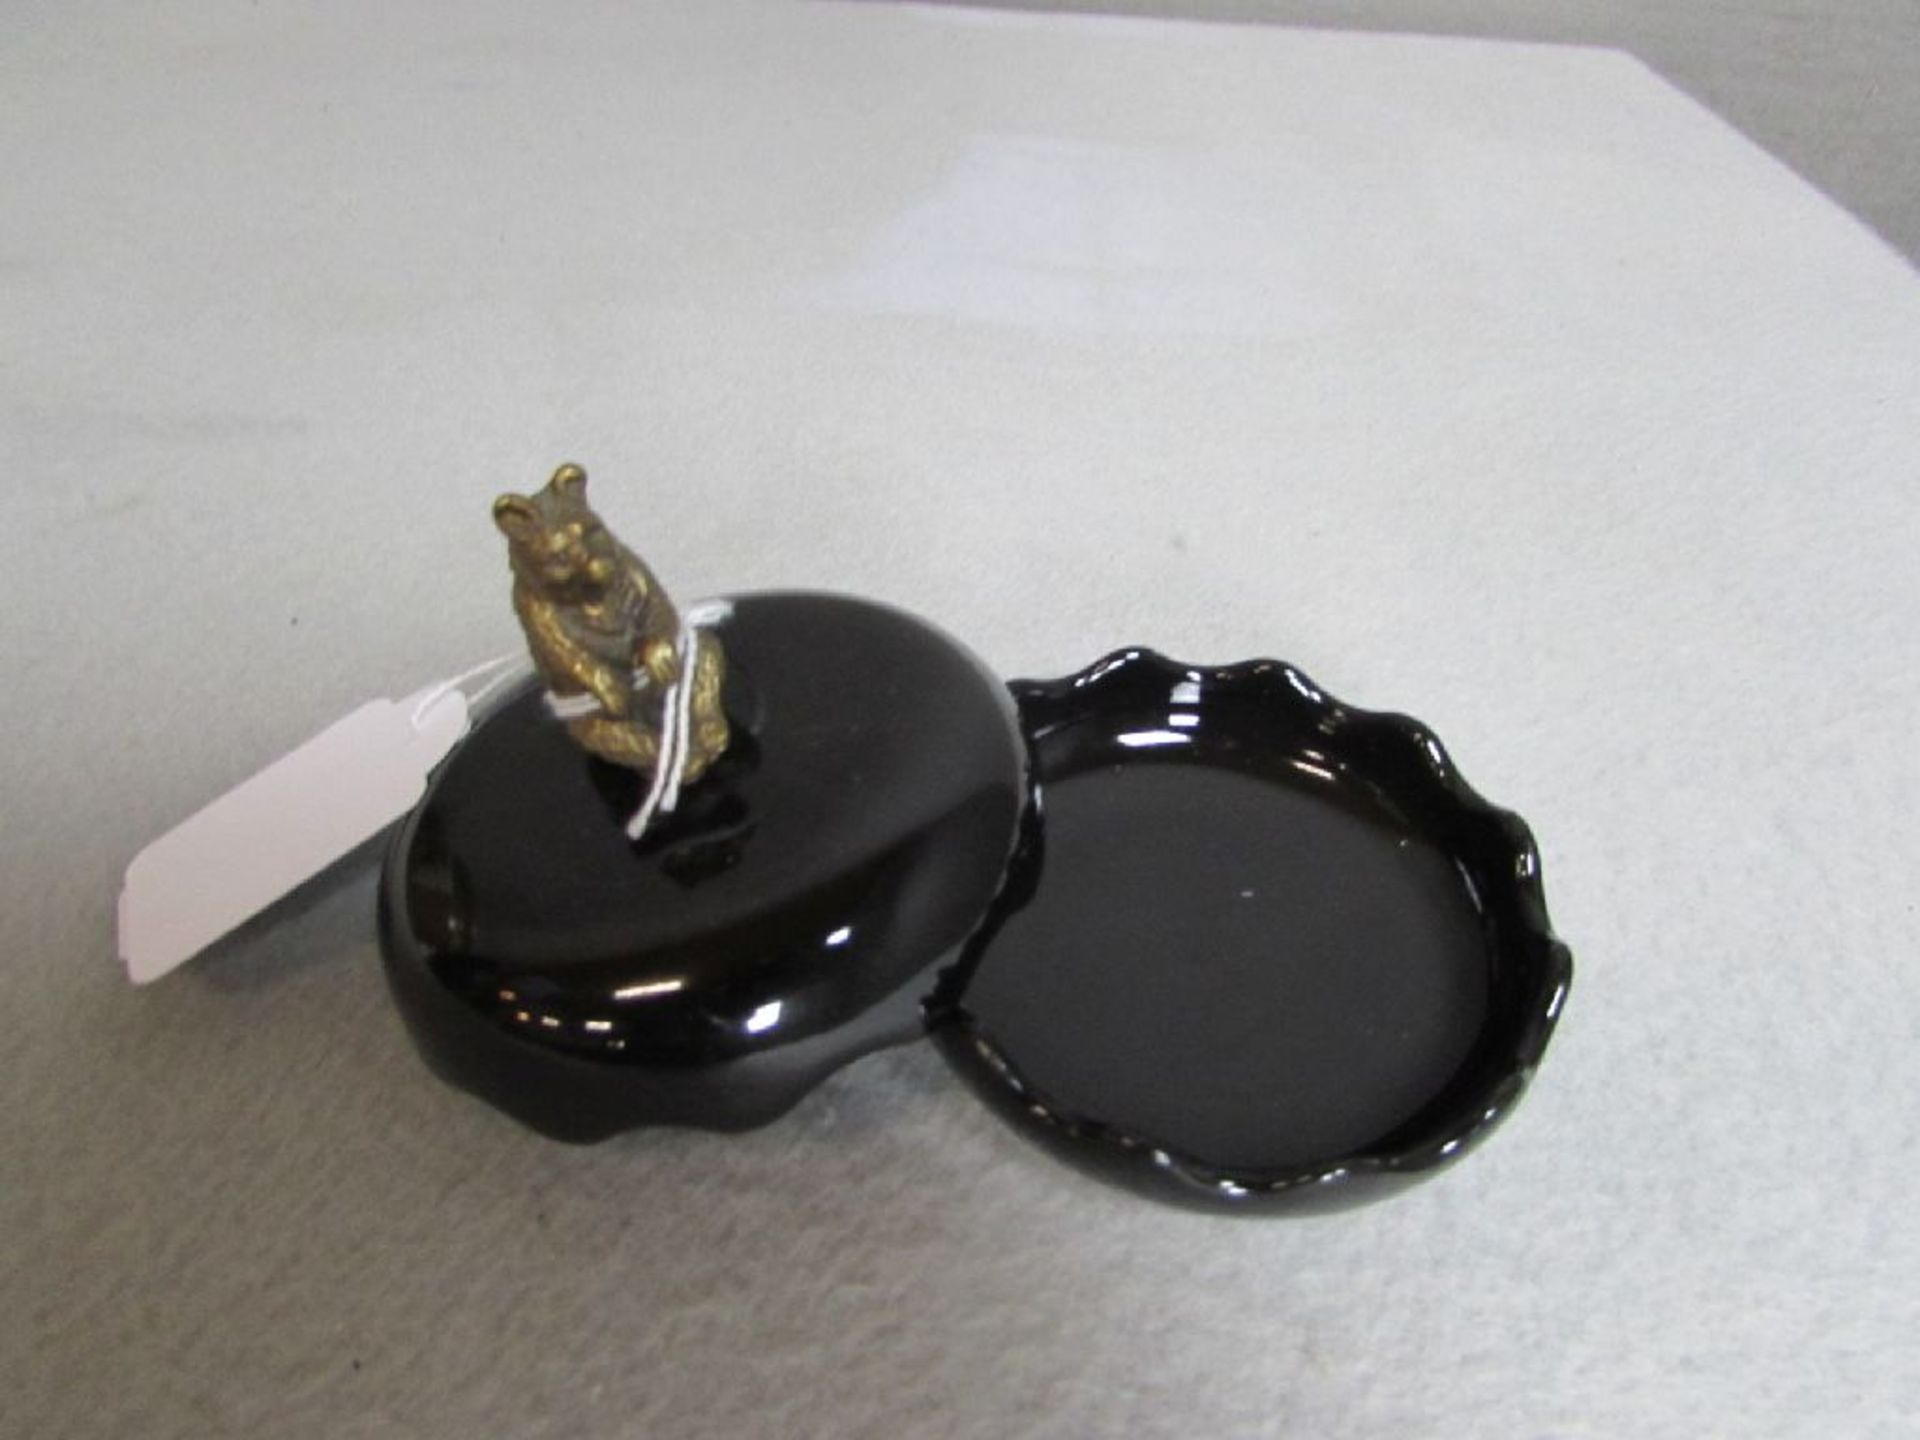 Kleine Deckeldose Keramik Knauf in Form eines Bronzebären 8cm Durchmesser - Image 2 of 2